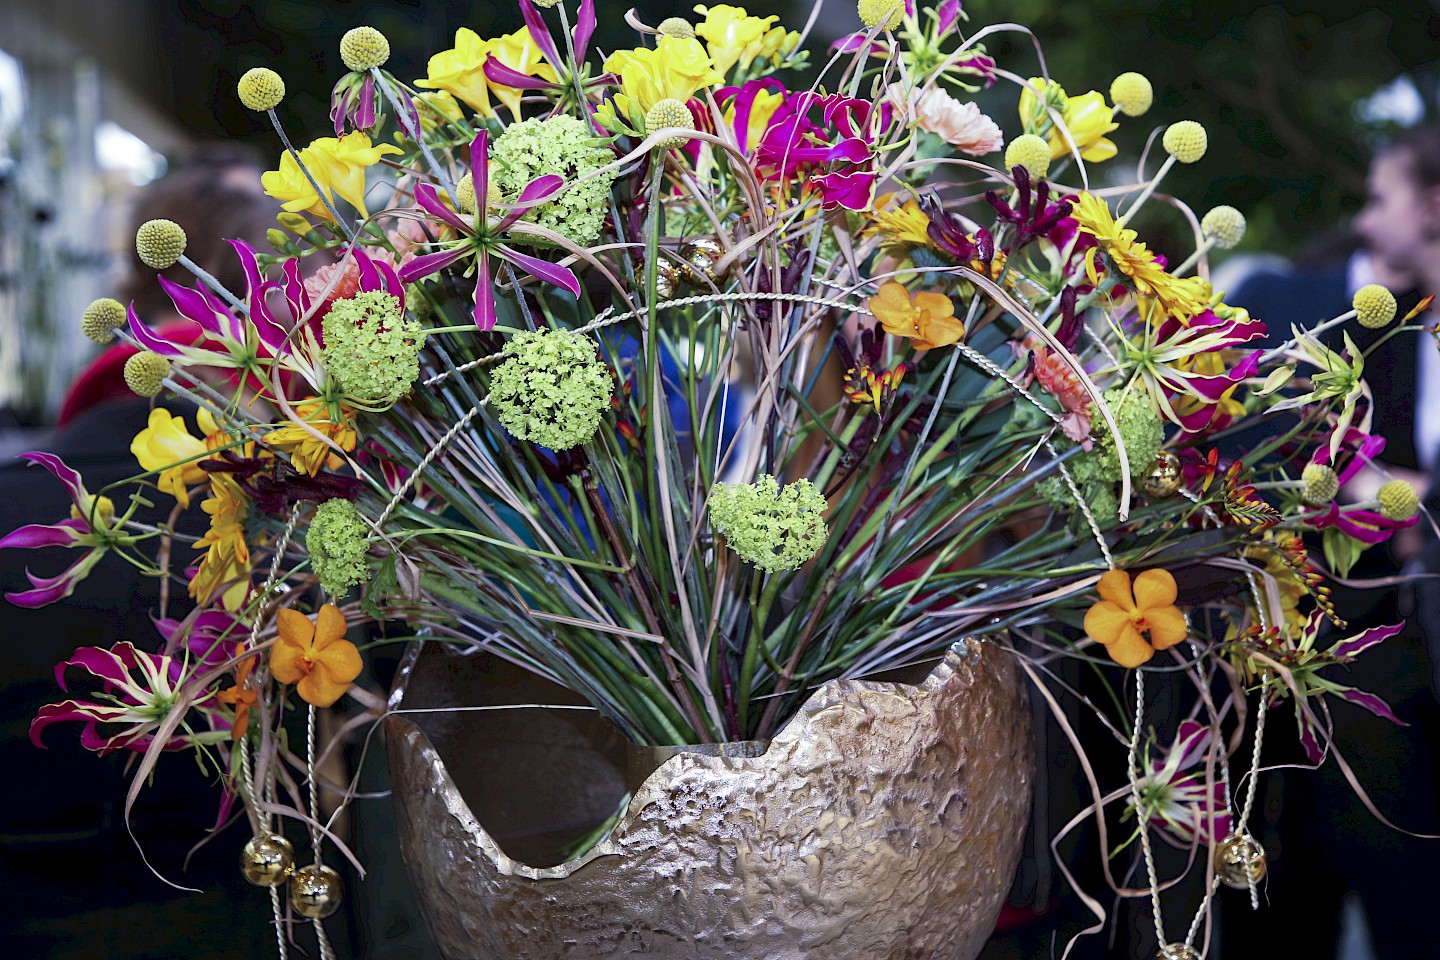 A colorful floral arrangement